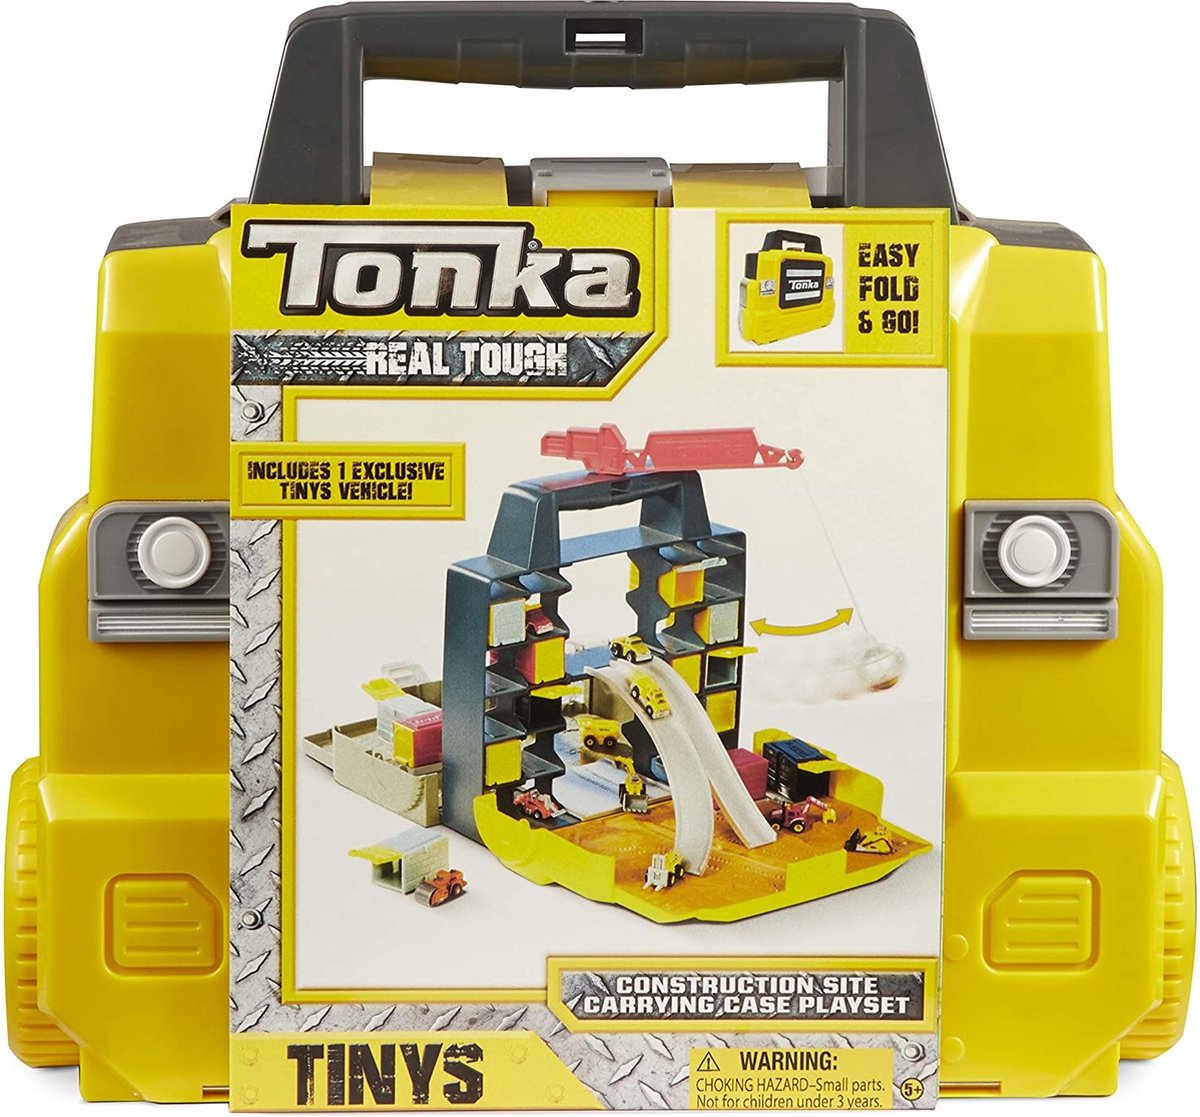 aangenaam stof in de ogen gooien dosis Tonka speelkoffer met auto | bol.com